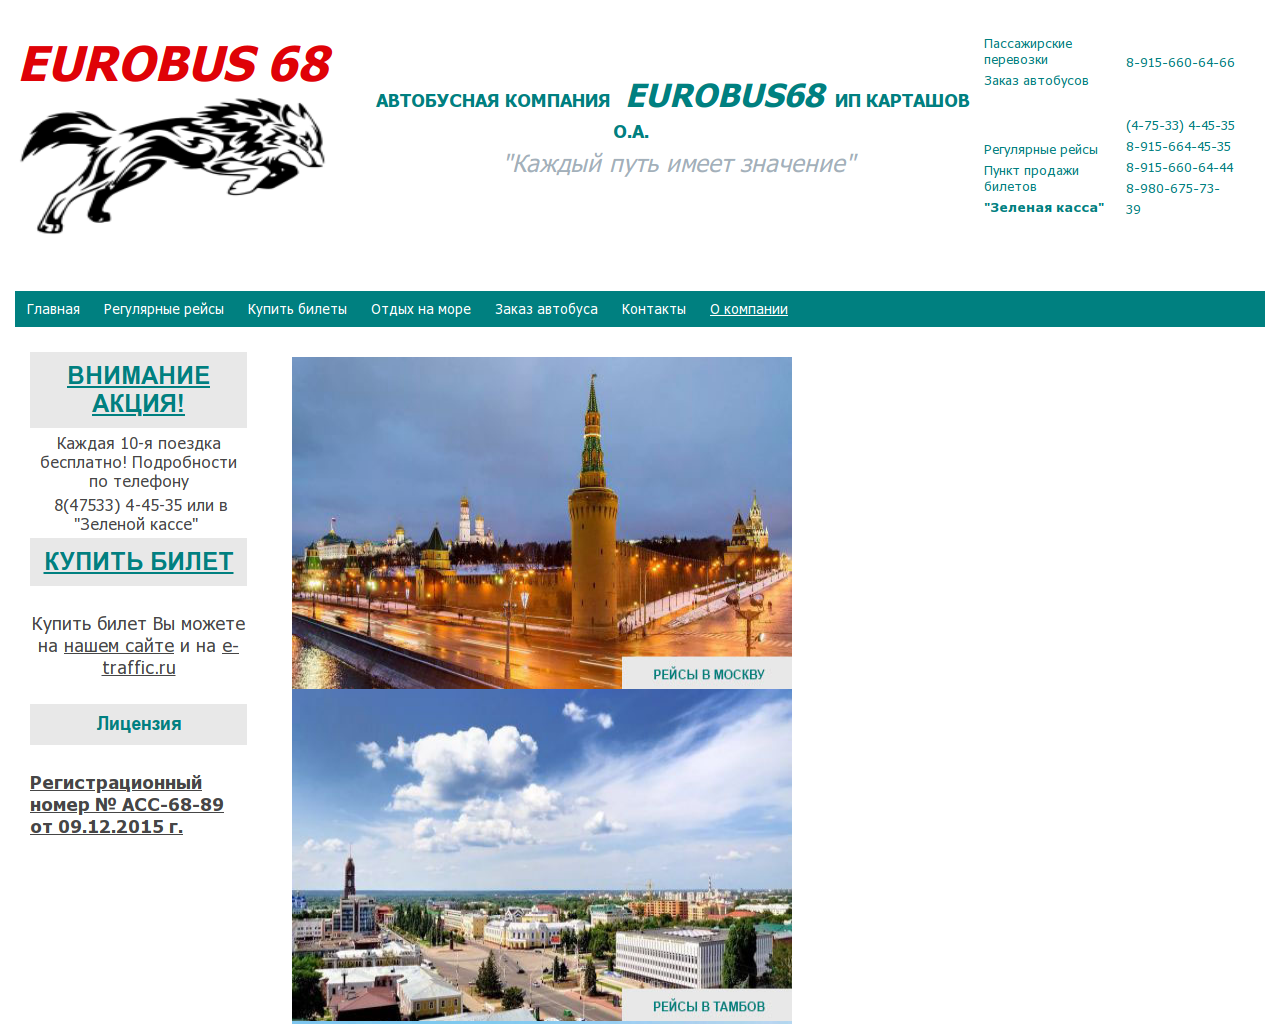 Изображение сайта eurobus68.ru в разрешении 1280x1024